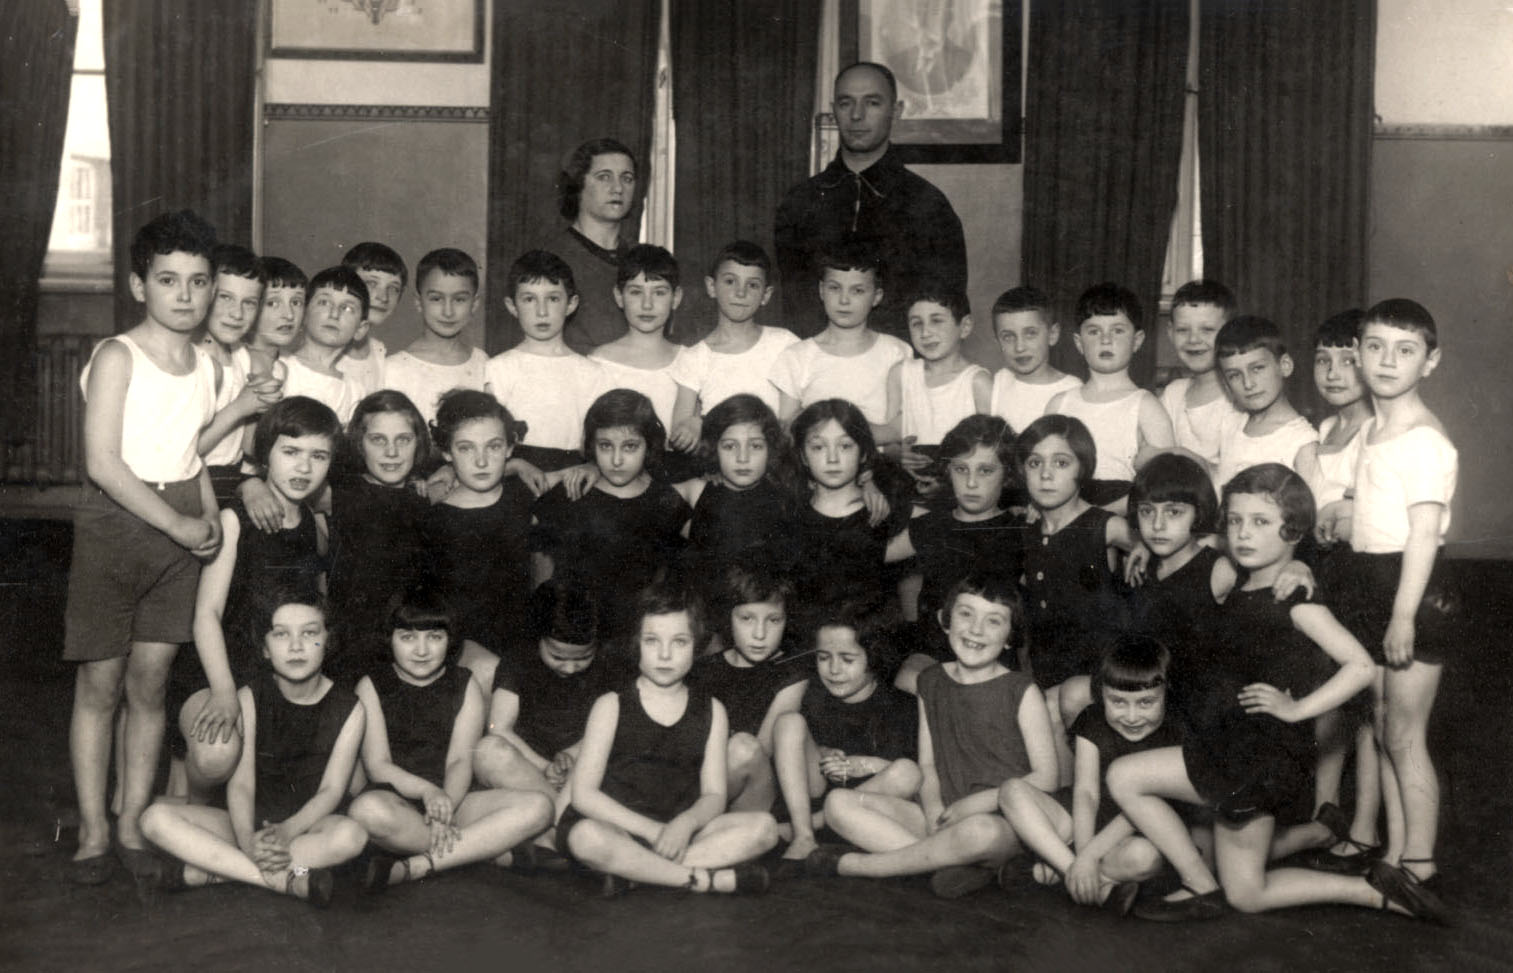 Рига, Латвия. Групповая фотография учащихся подготовительного класса Б на уроке физкультуры, 1933